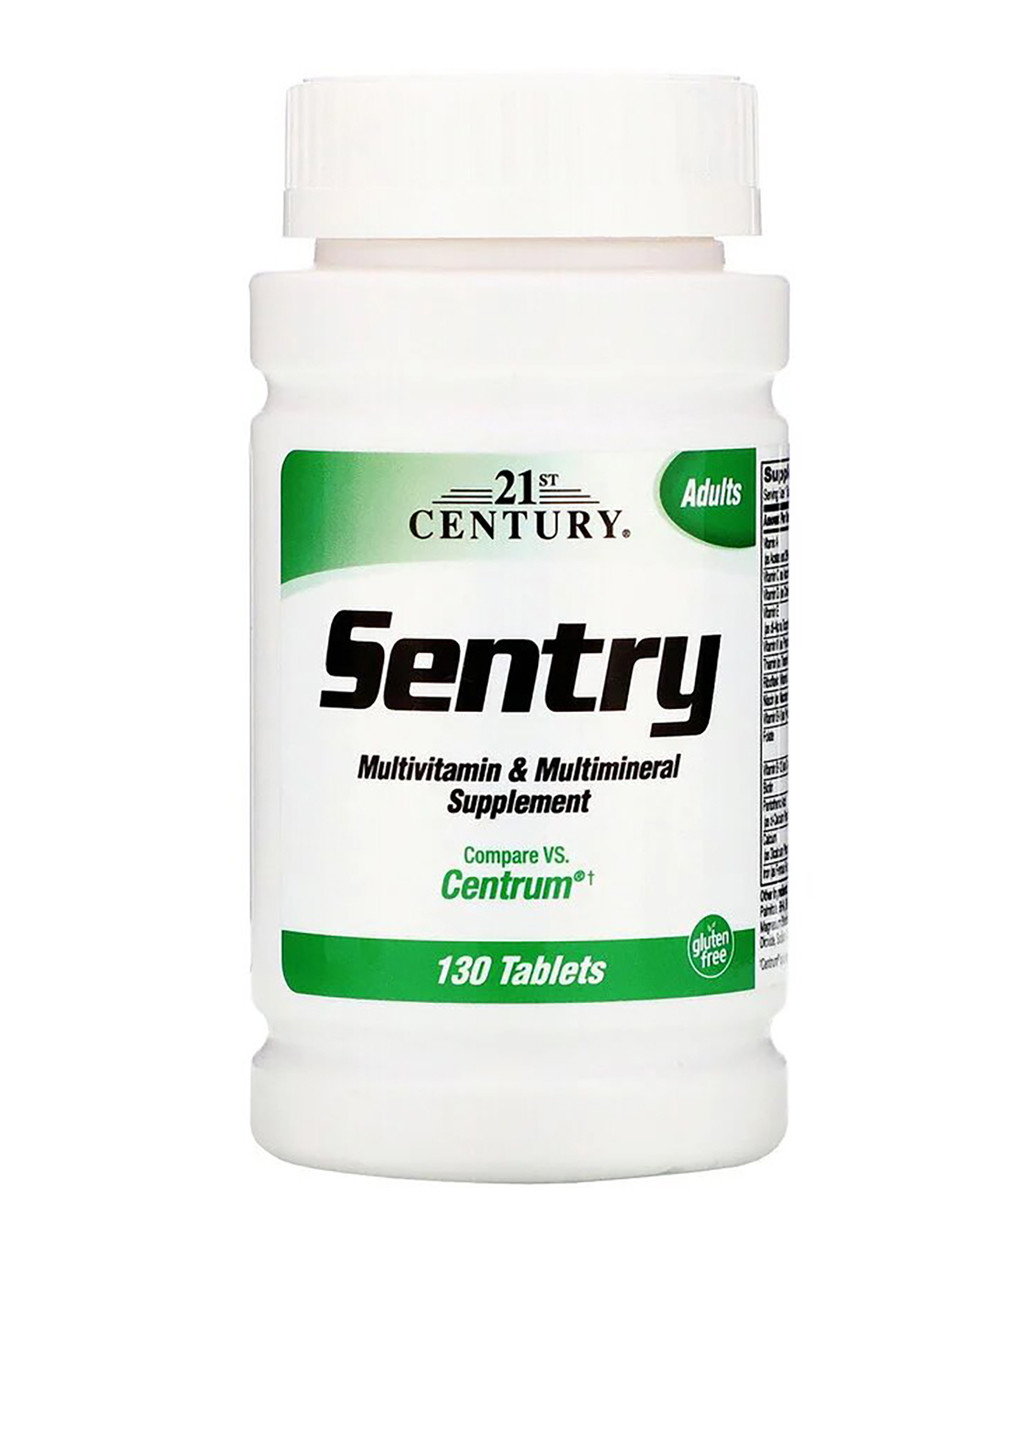 Мультивитаминная и мультиминеральная добавка, Sentry (130 таб.) 21st Century (251206319)